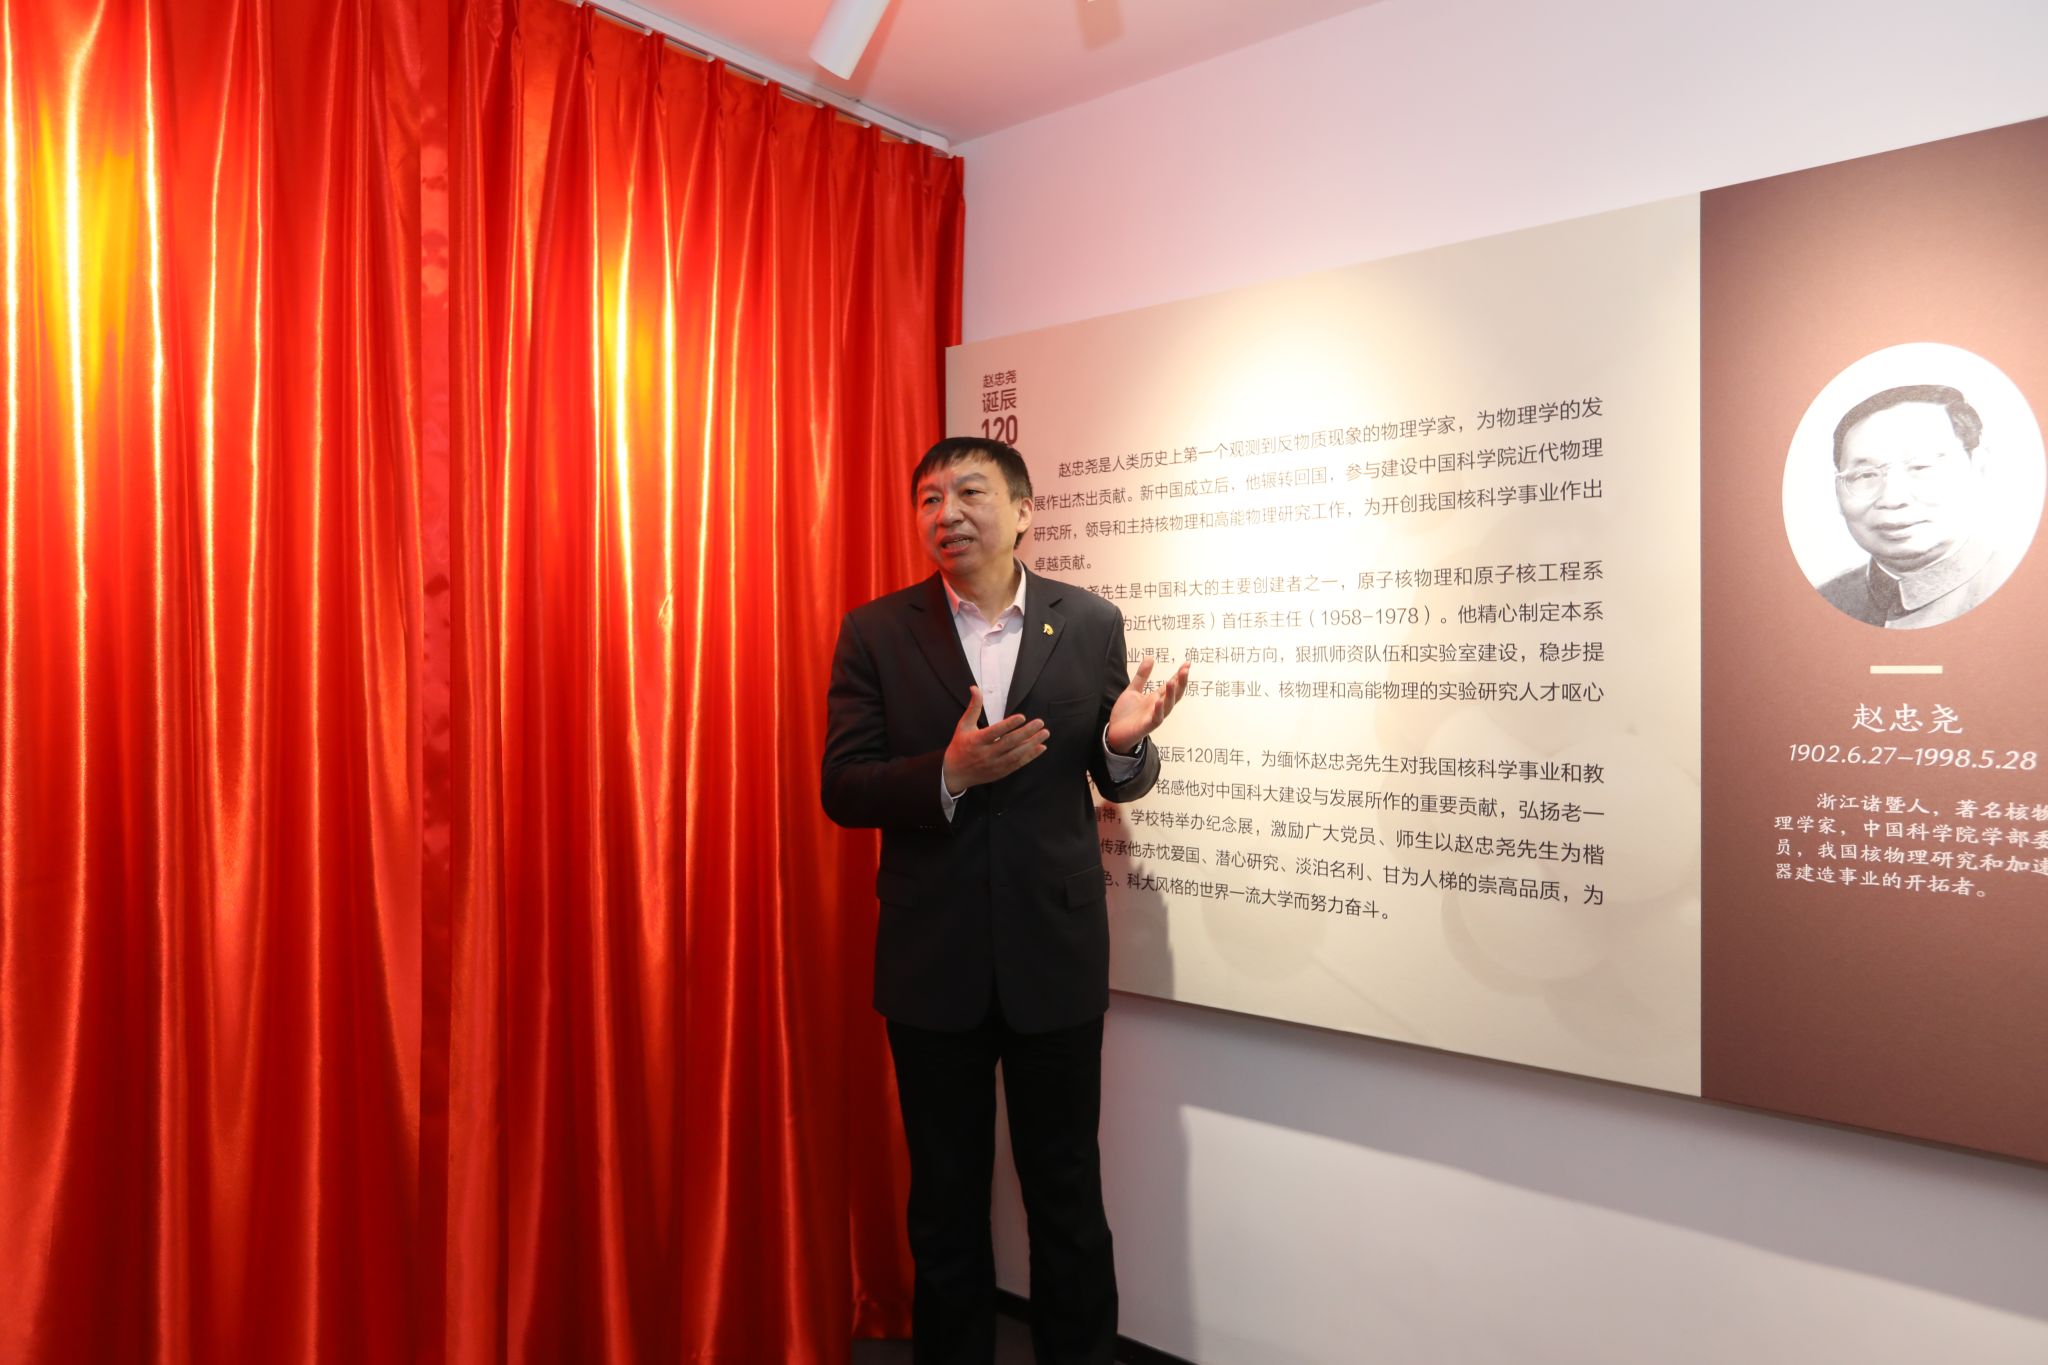 关于赵忠尧先生诞辰120周年纪念展开展的通知-中国科学技术大学